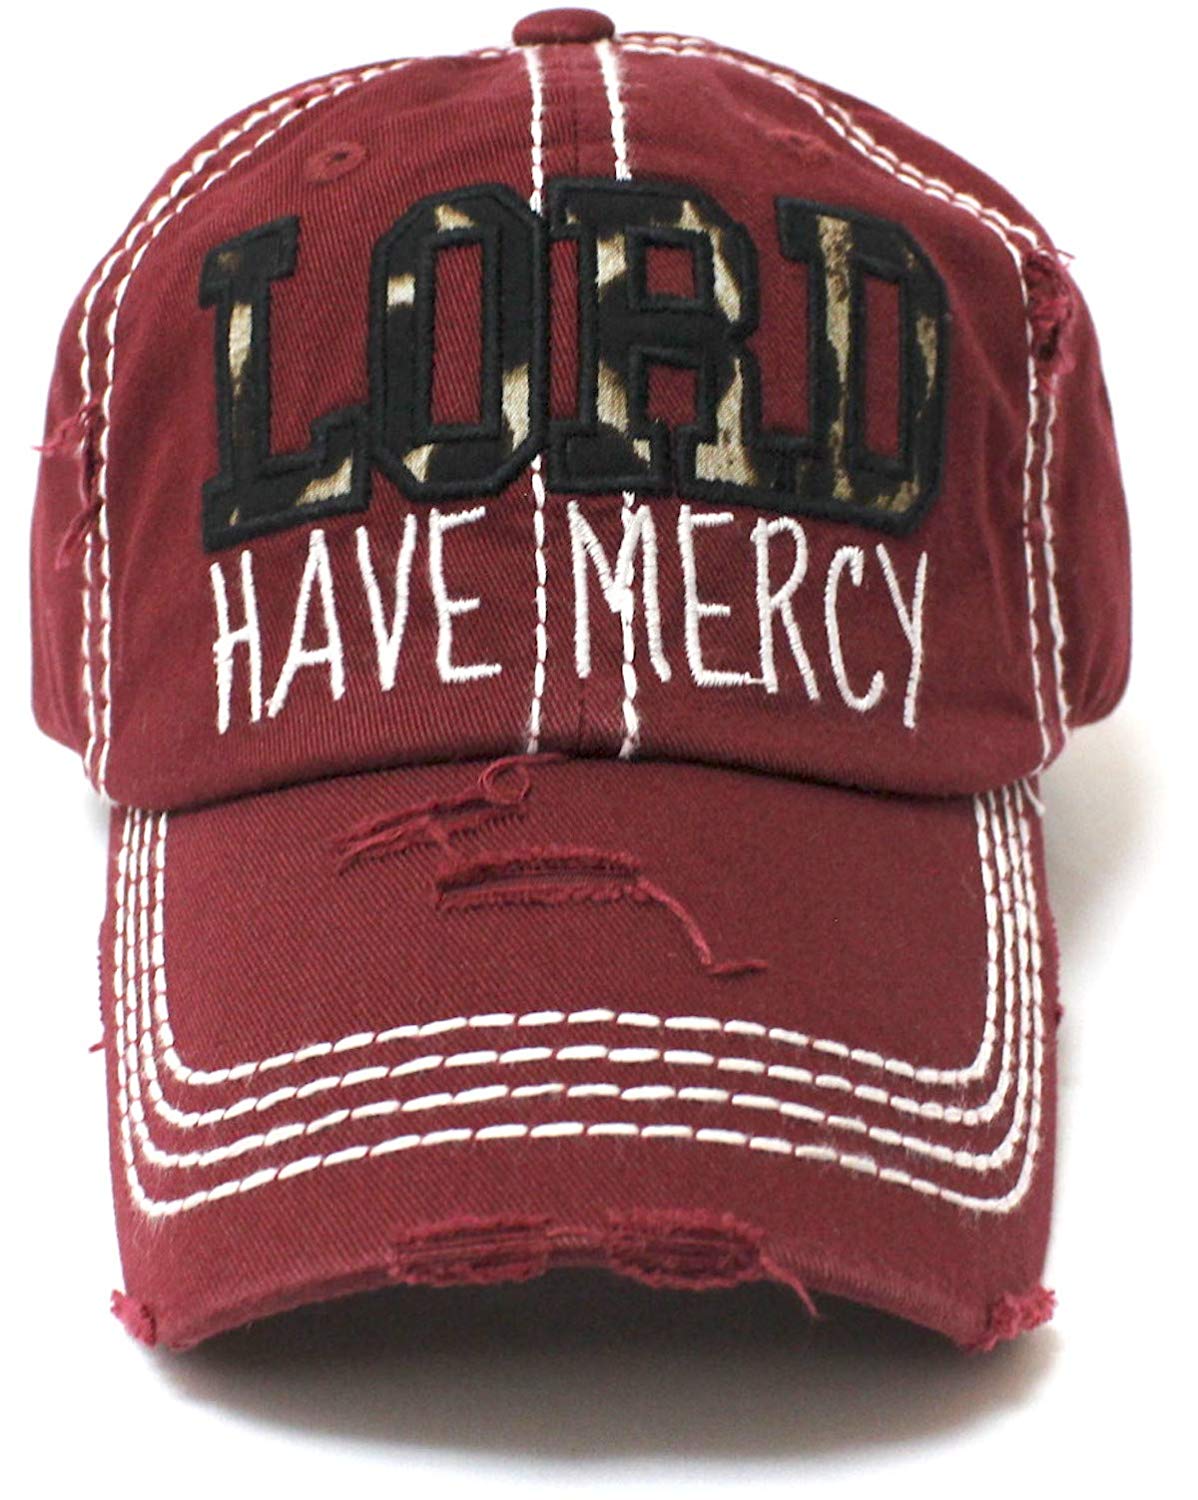 CAPS 'N VINTAGE Burgundy Lord Have Mercy Leopard Baseball Hat - Caps 'N Vintage 